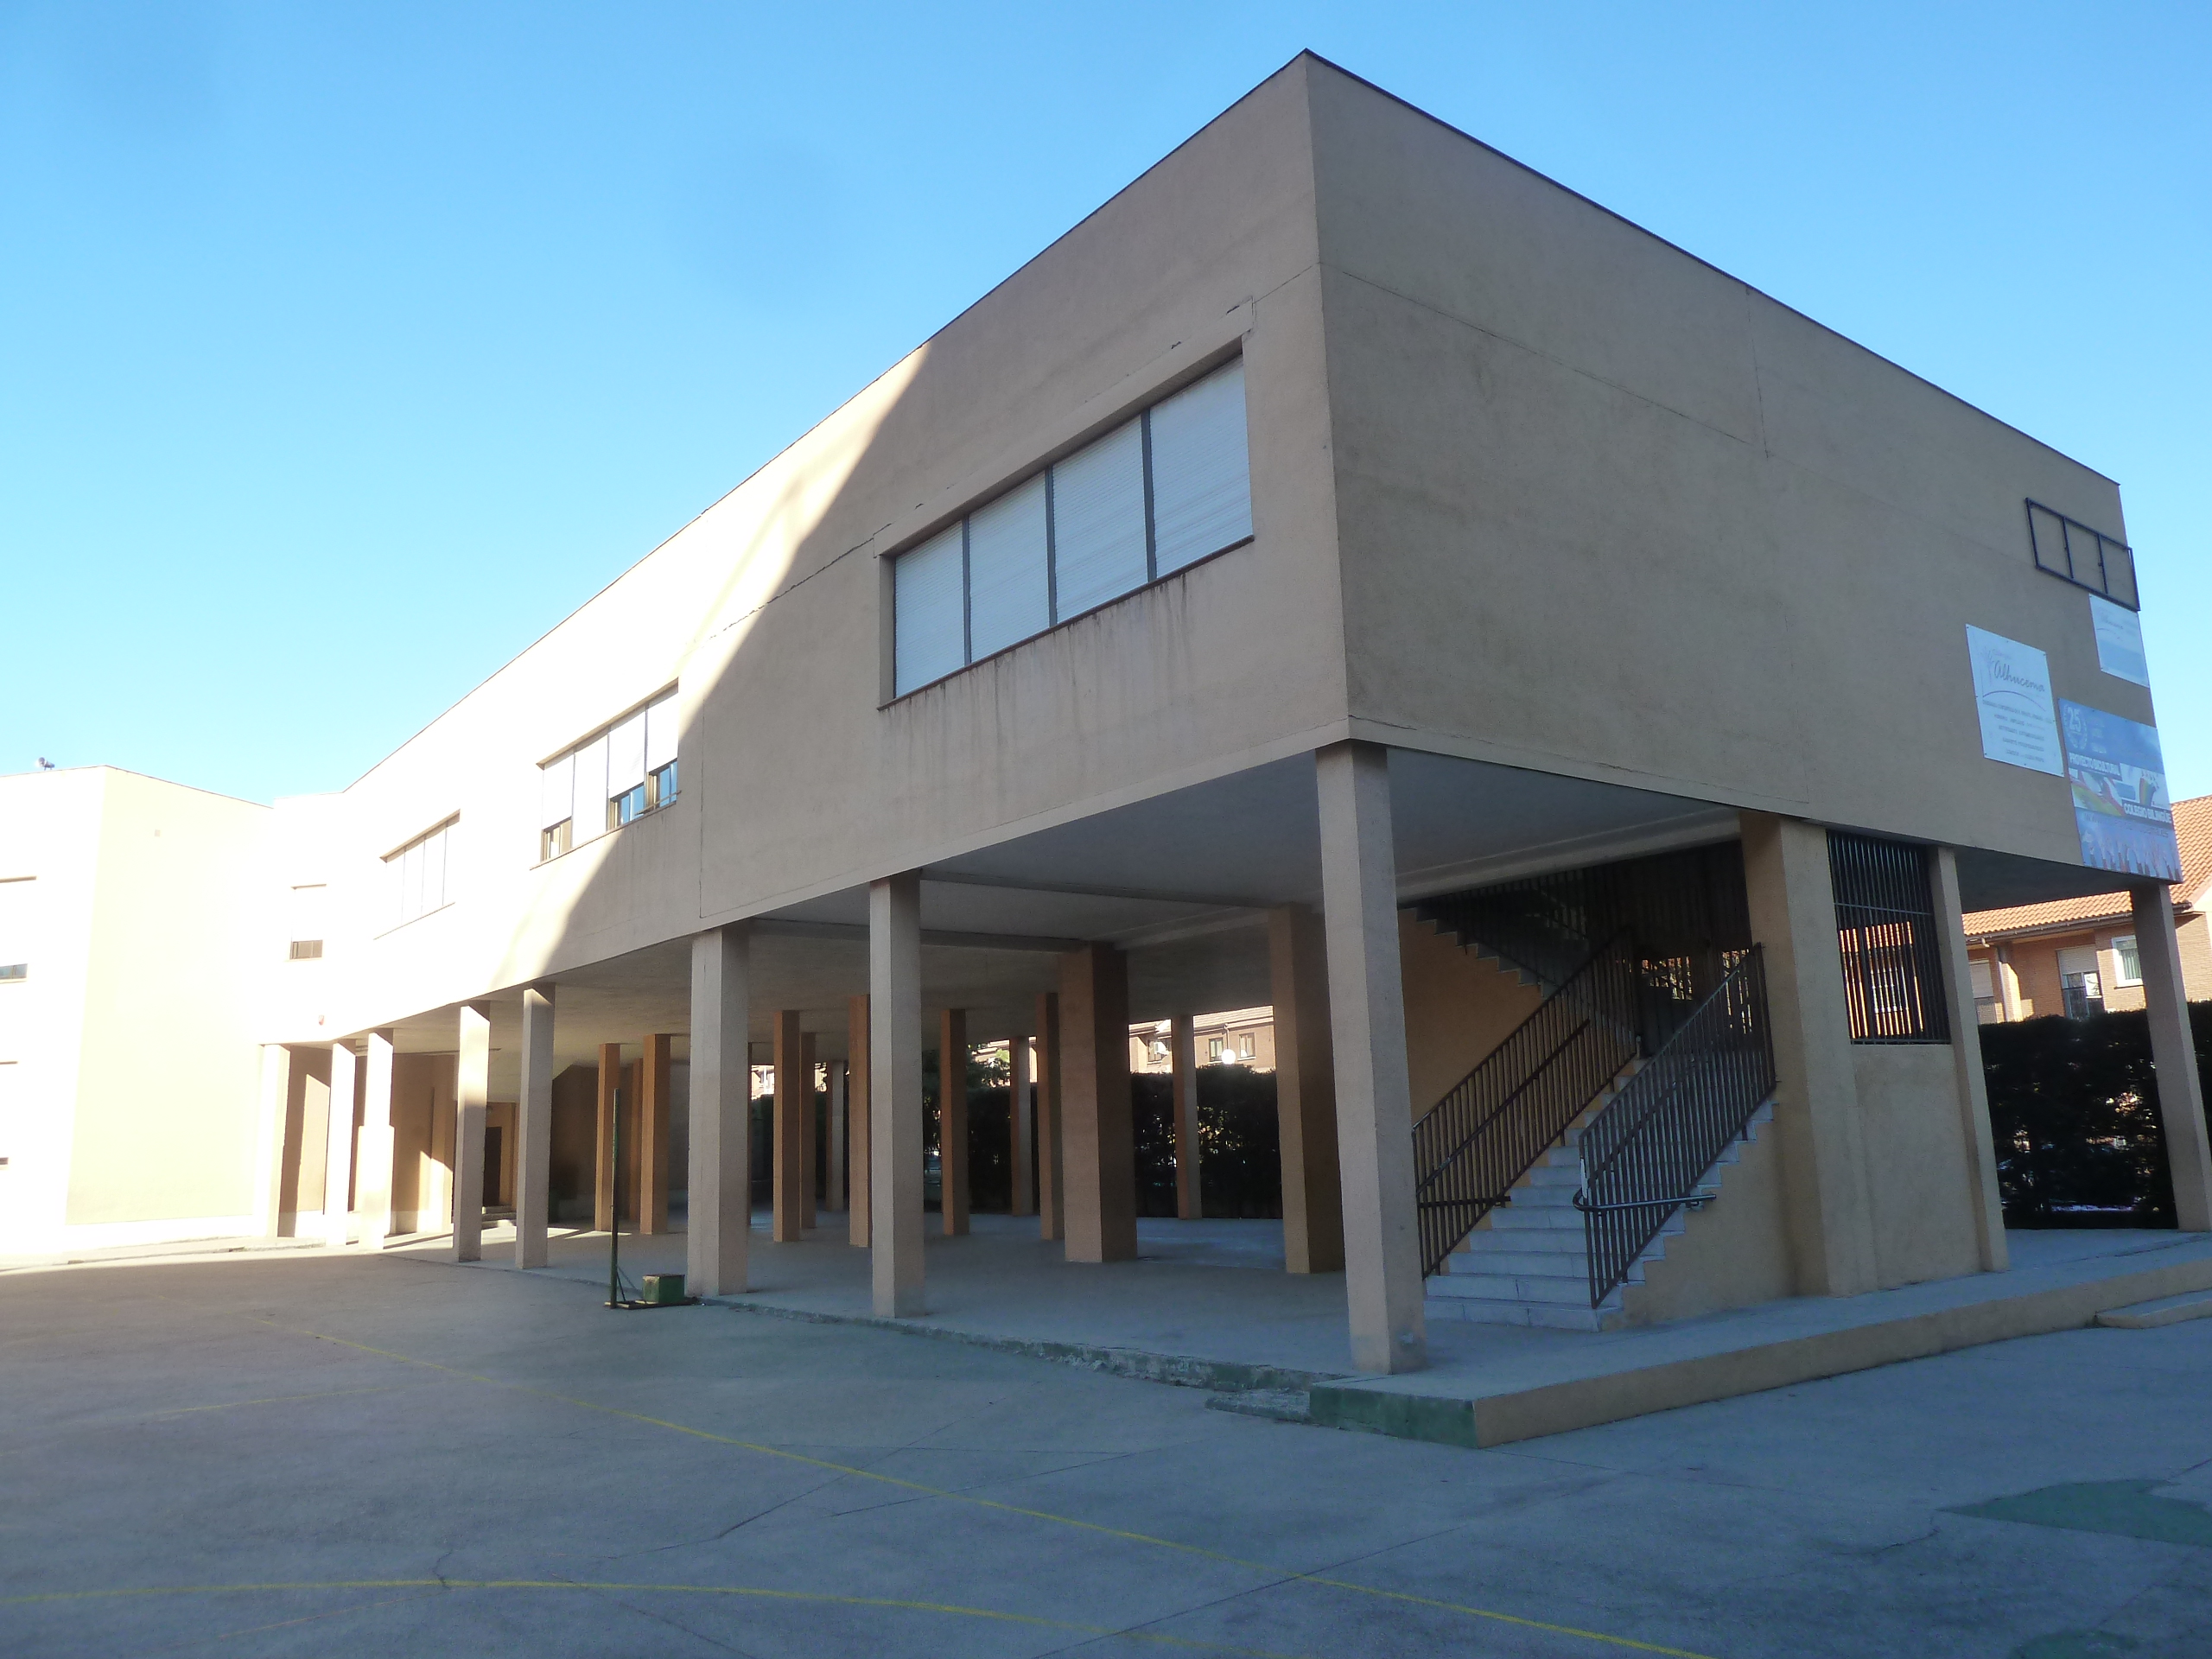 Proyecto de ampliación del colegio Alhucema en Madrid